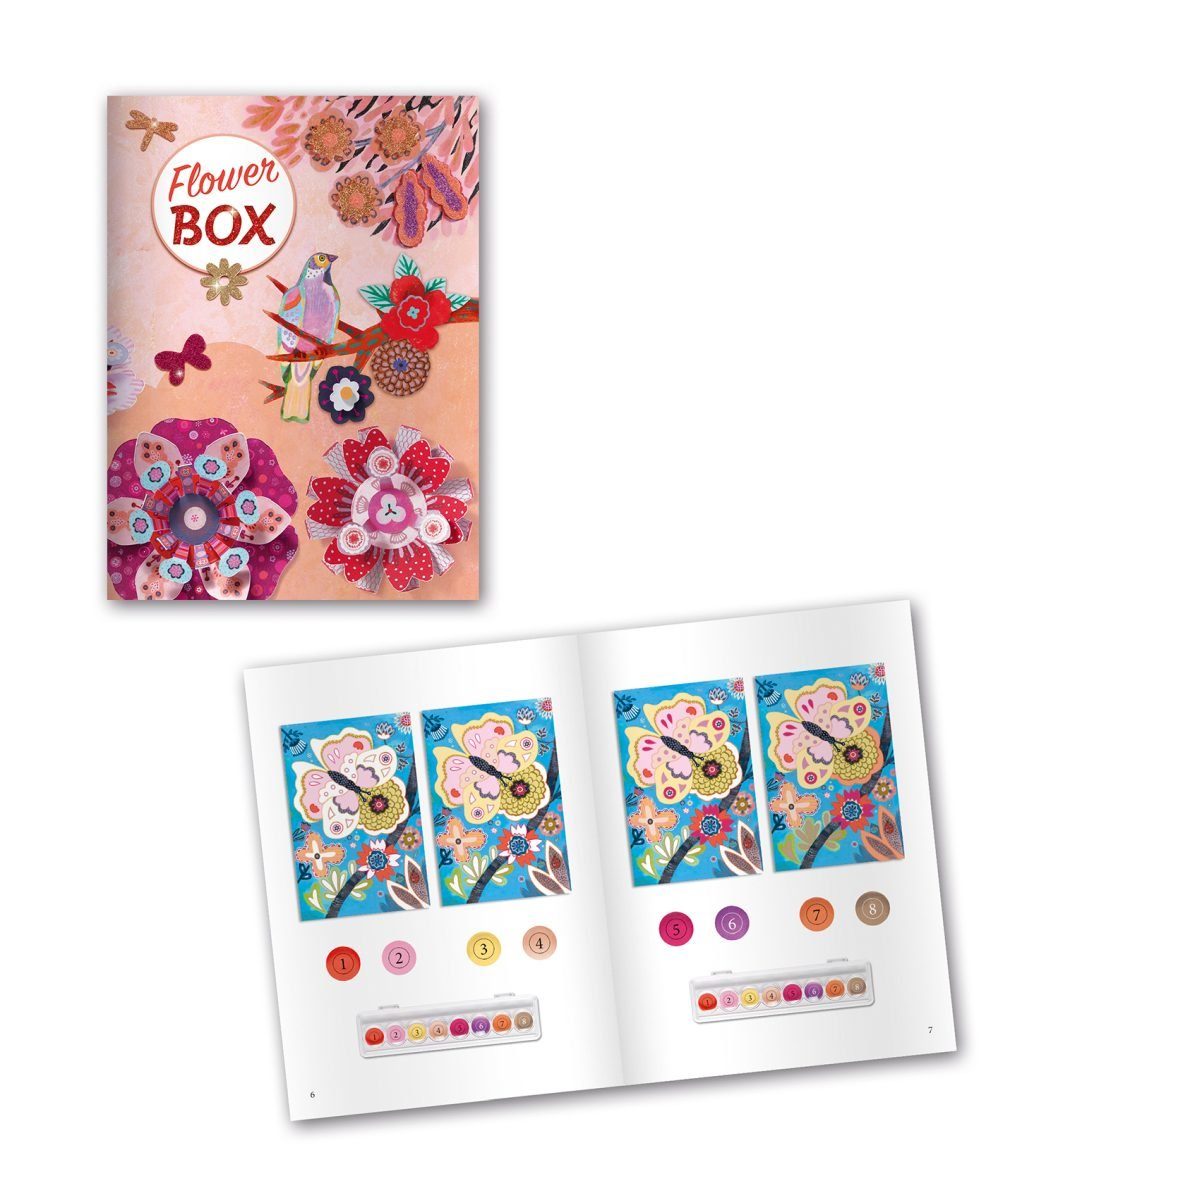 DJECO Kreativset Multi-Activity Kit für Blumengarten mit Aktivitäten Kinder 6